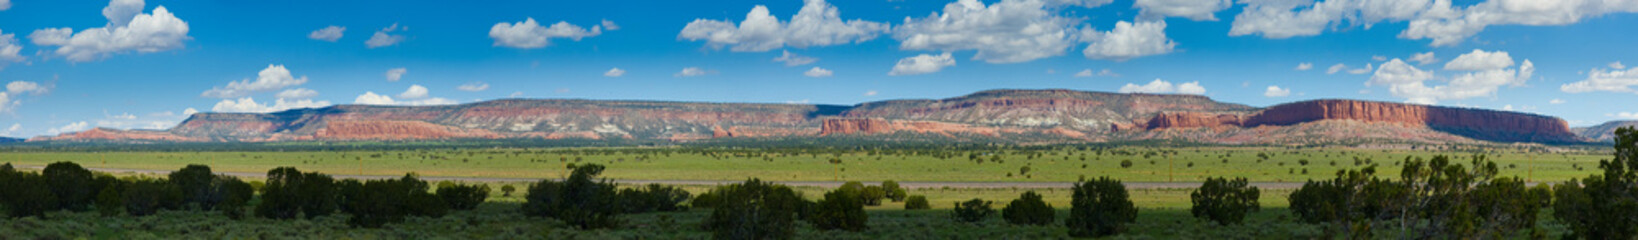 Rote Berge von Arizona - Panorama